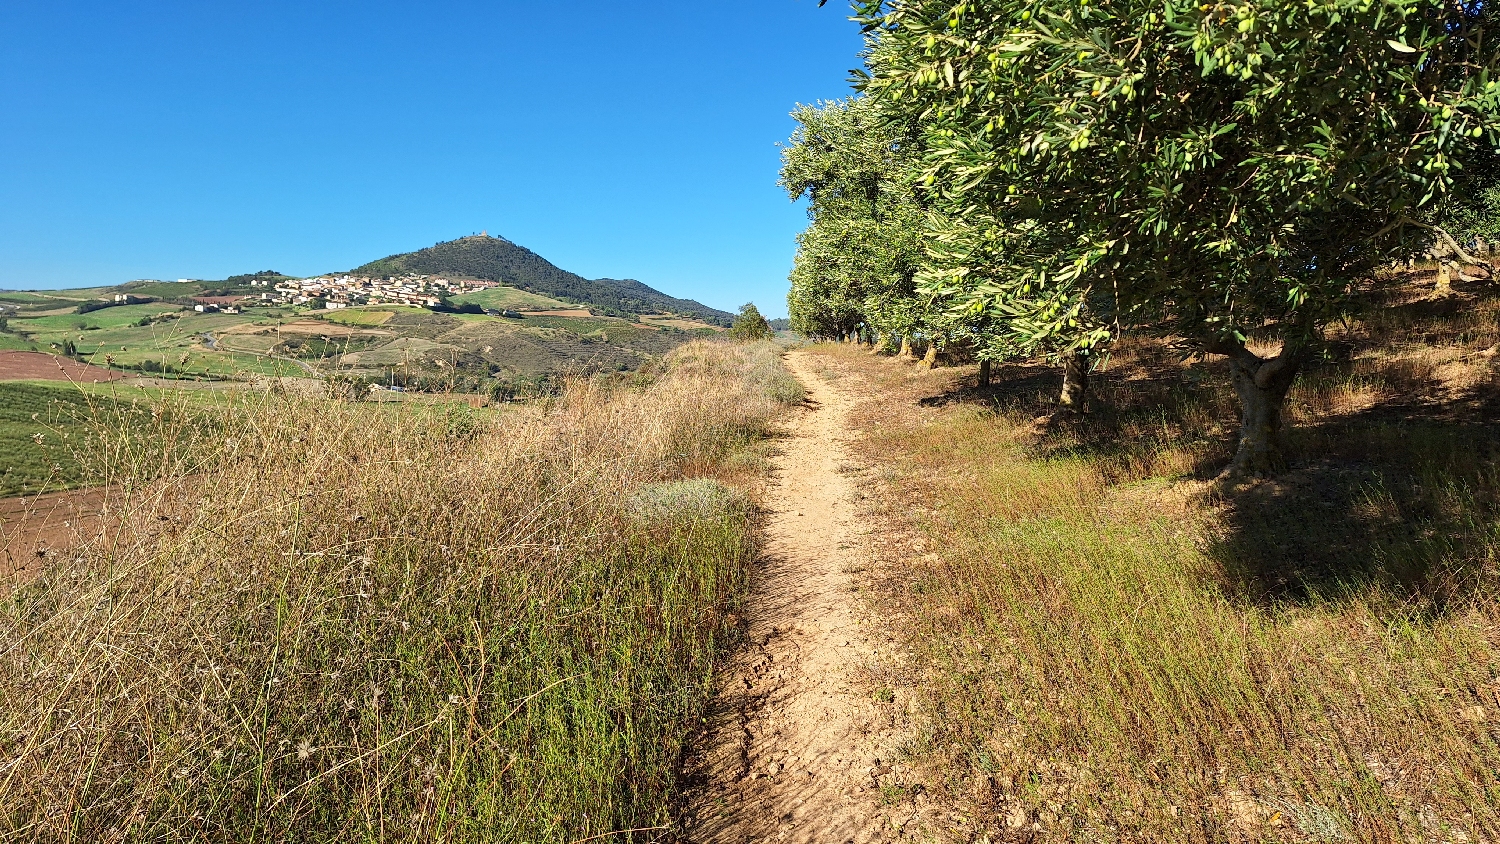 El Camino, Aragon út, az út egy olívaliget mellett vezet